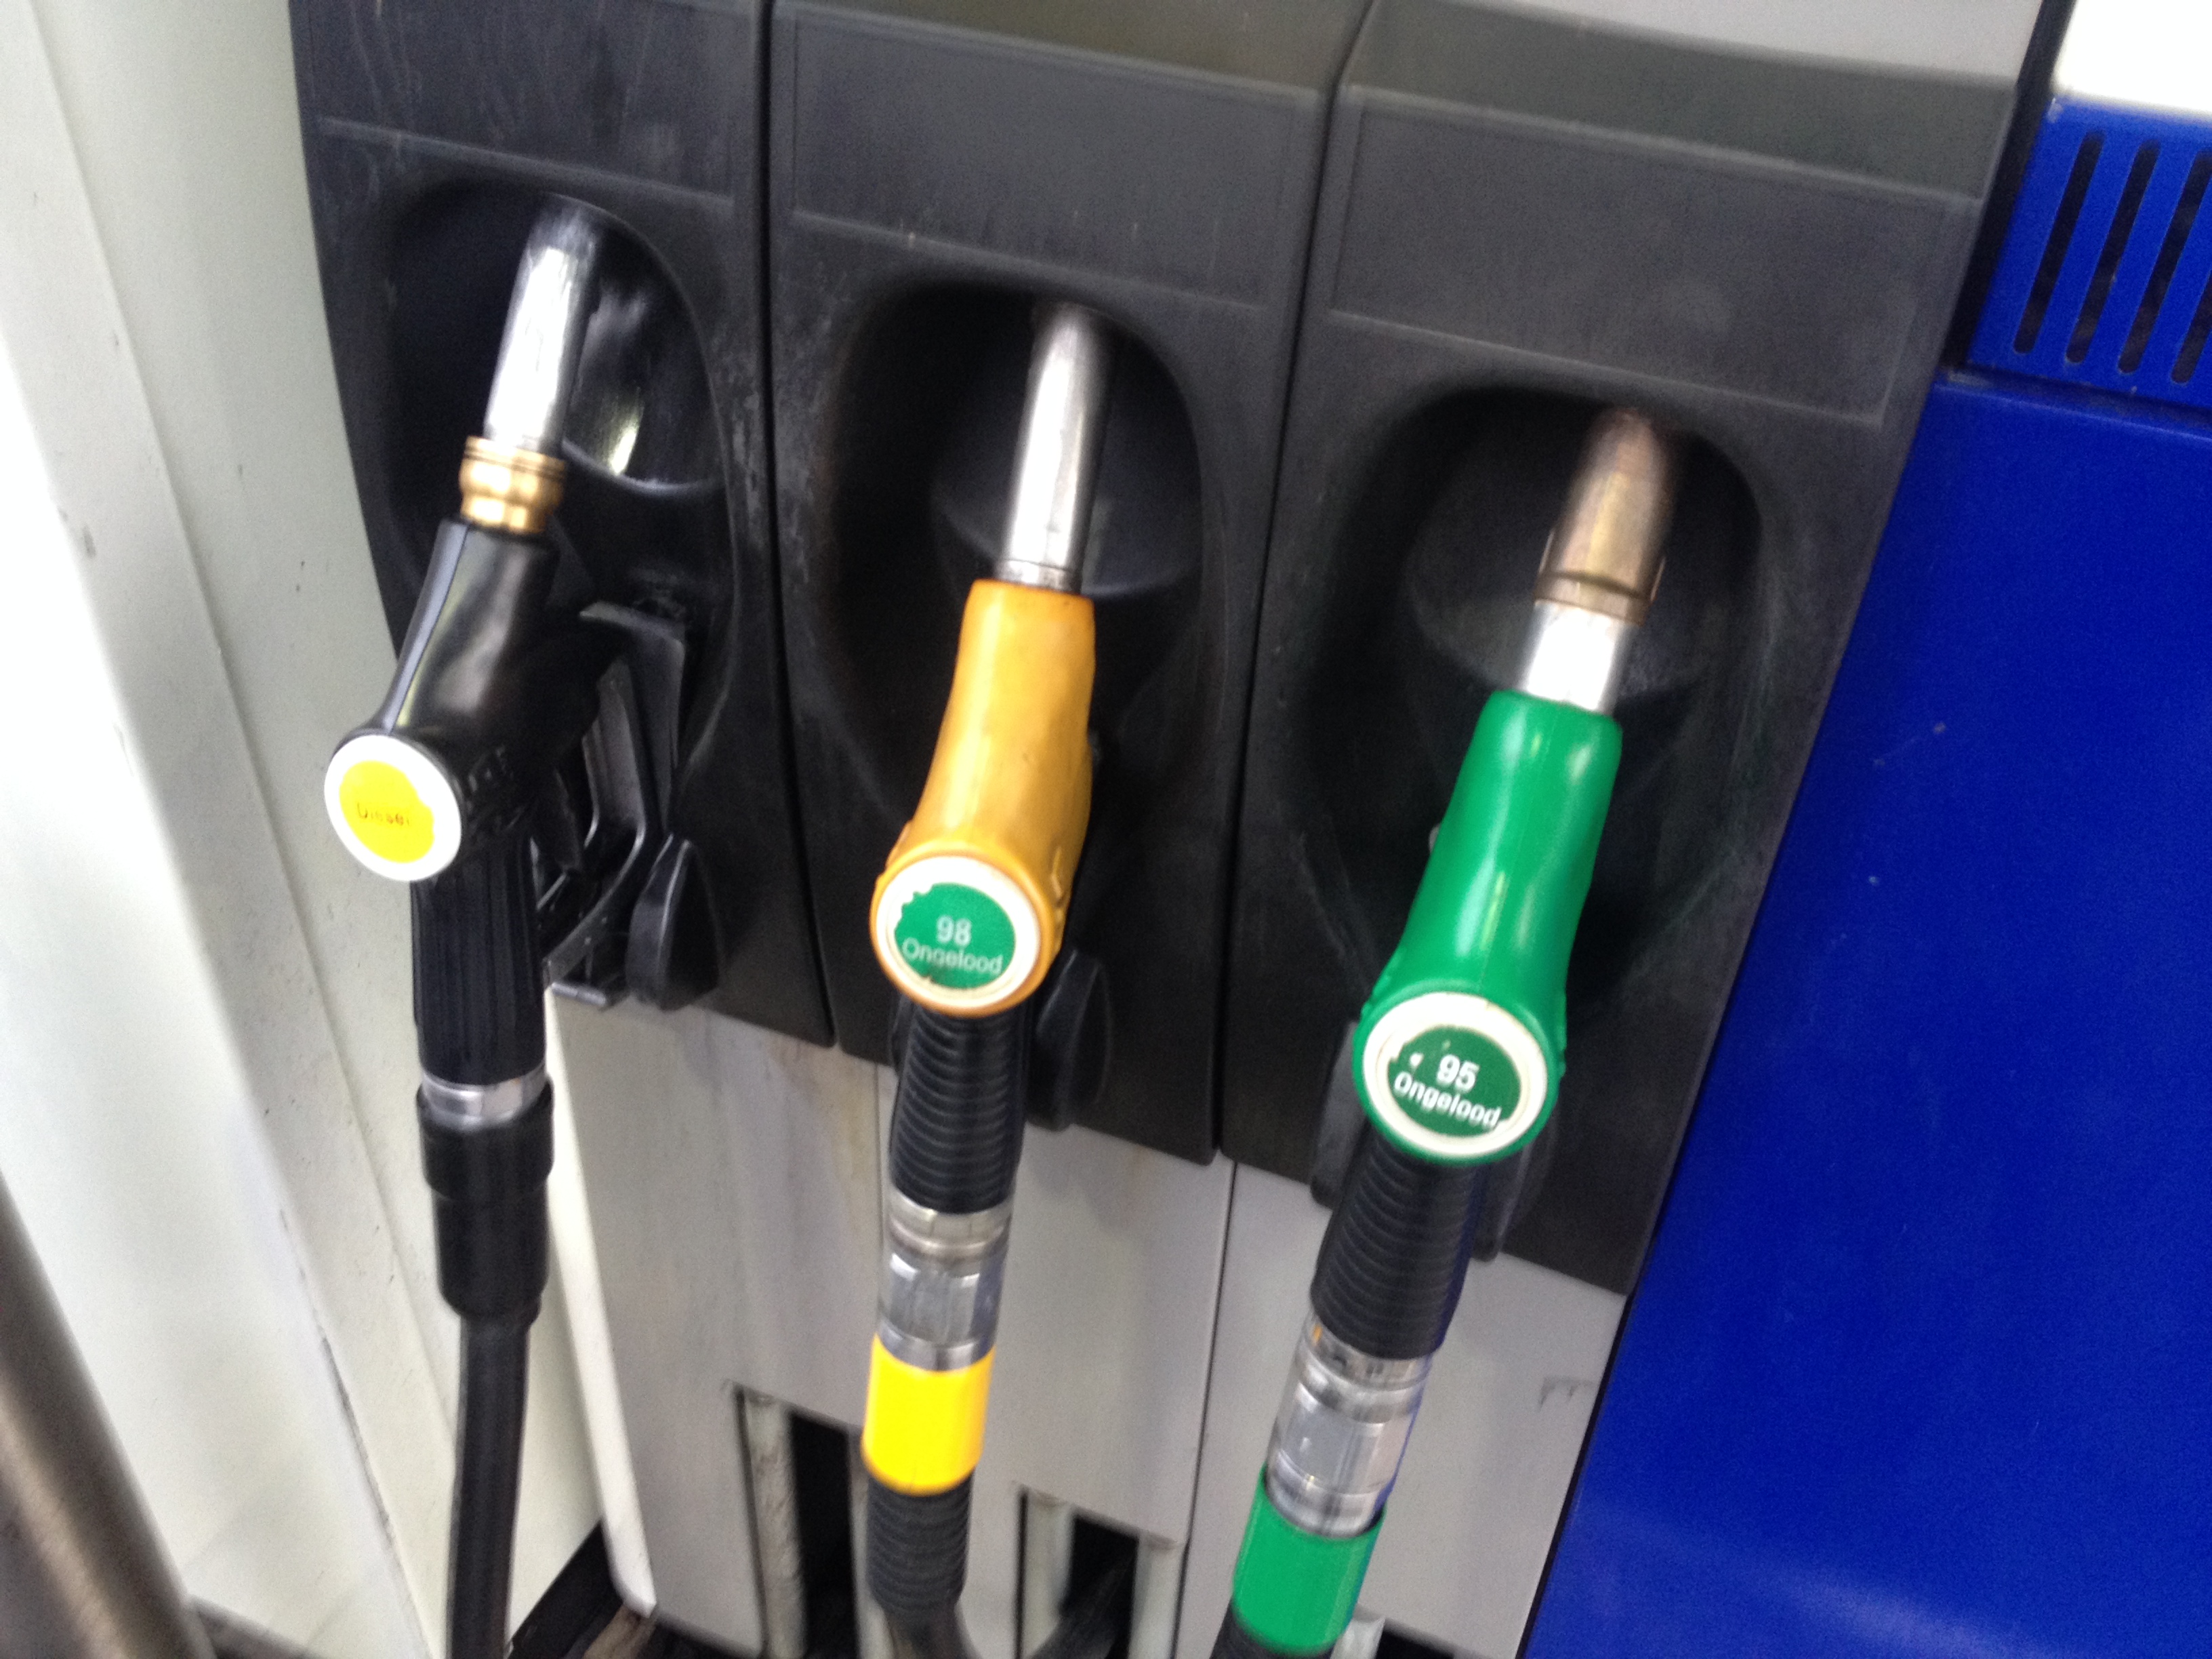 Grens aan de benzineprijs?